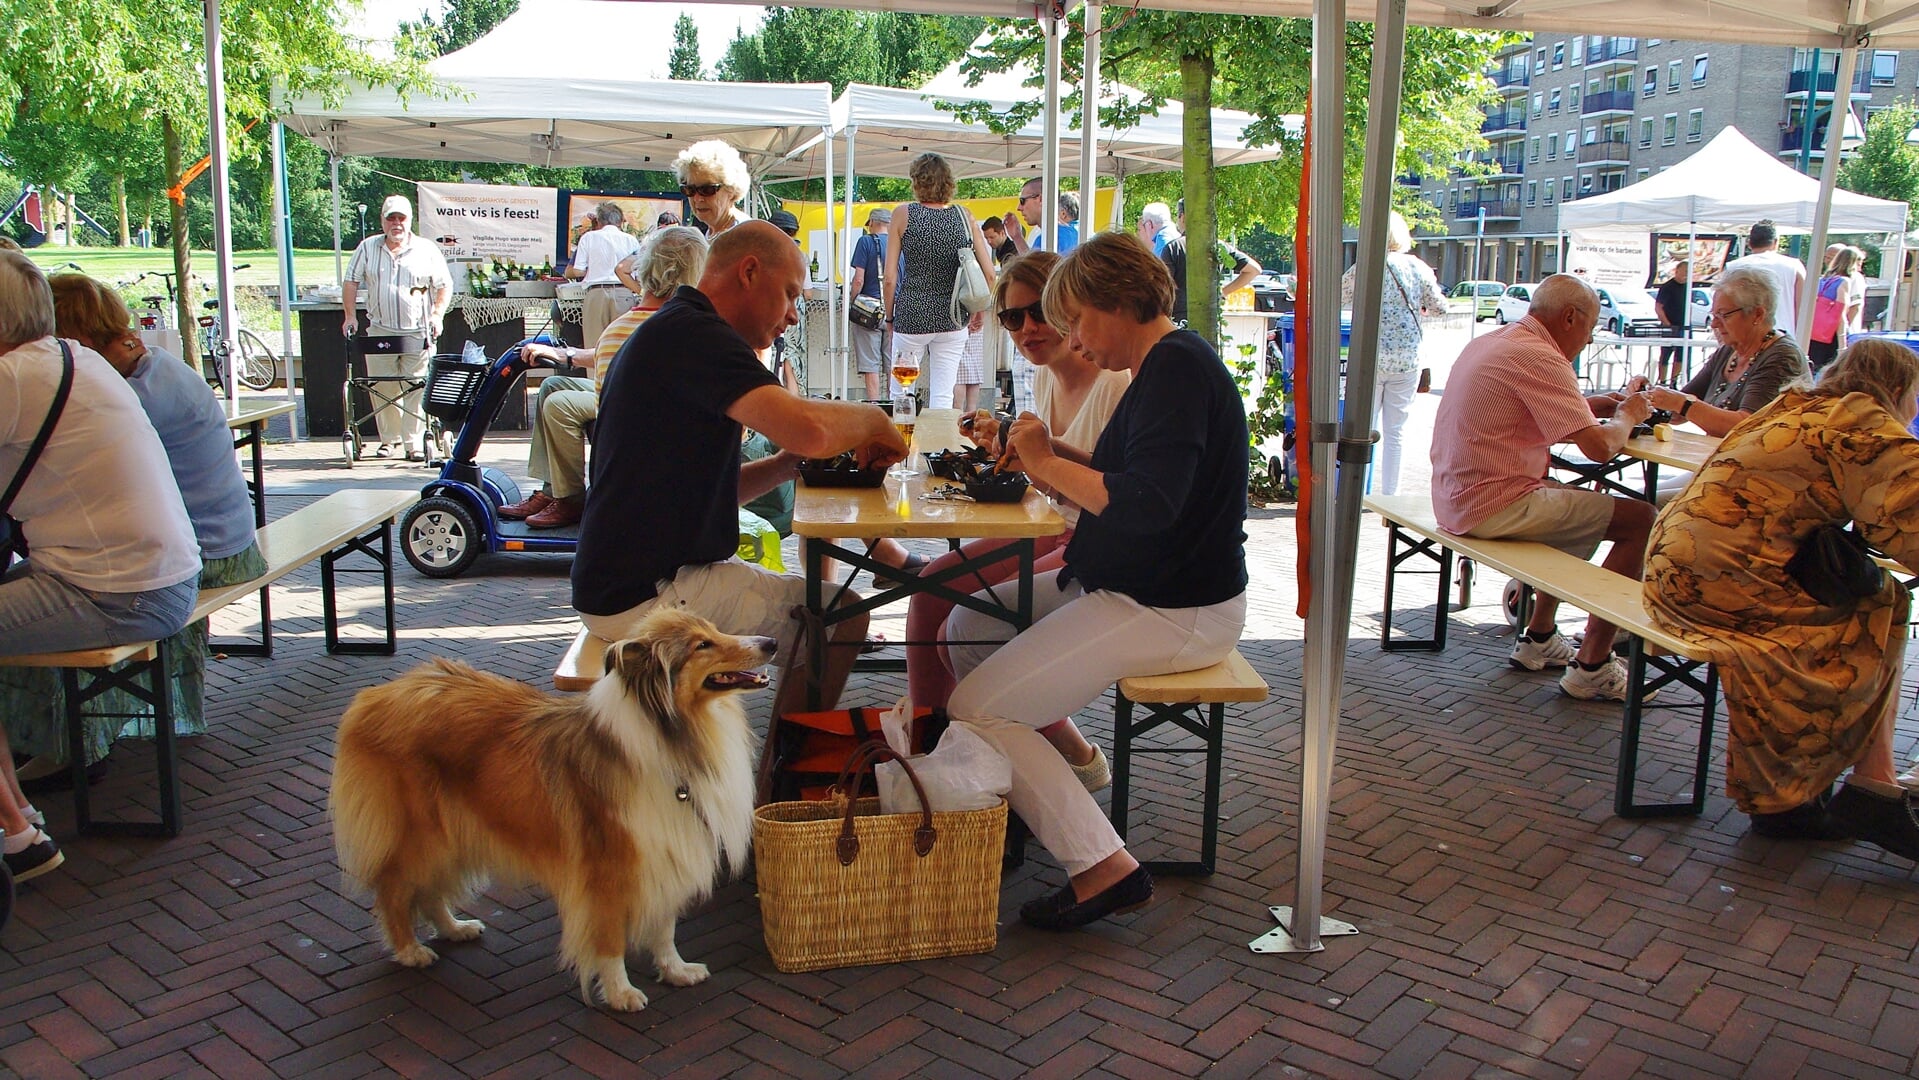 De Mosselmarkt in Winkelcentrum Lange Voort is inmiddels traditie. | Archieffoto uit 2016 